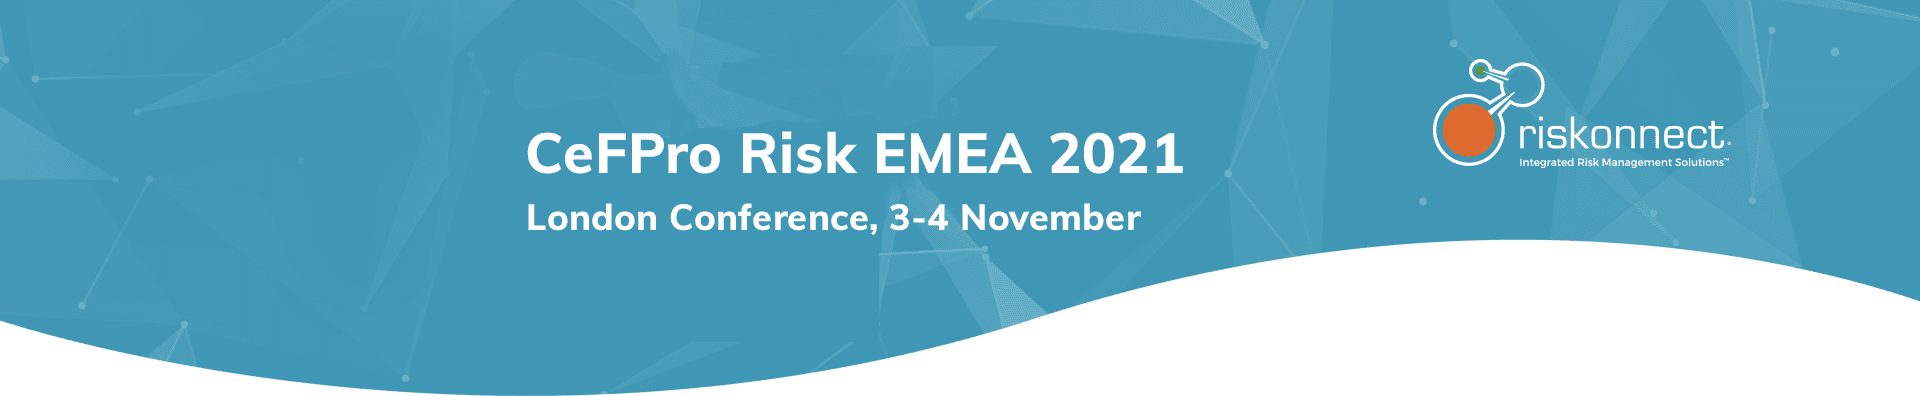 CeFPro Risk EMEA 2021